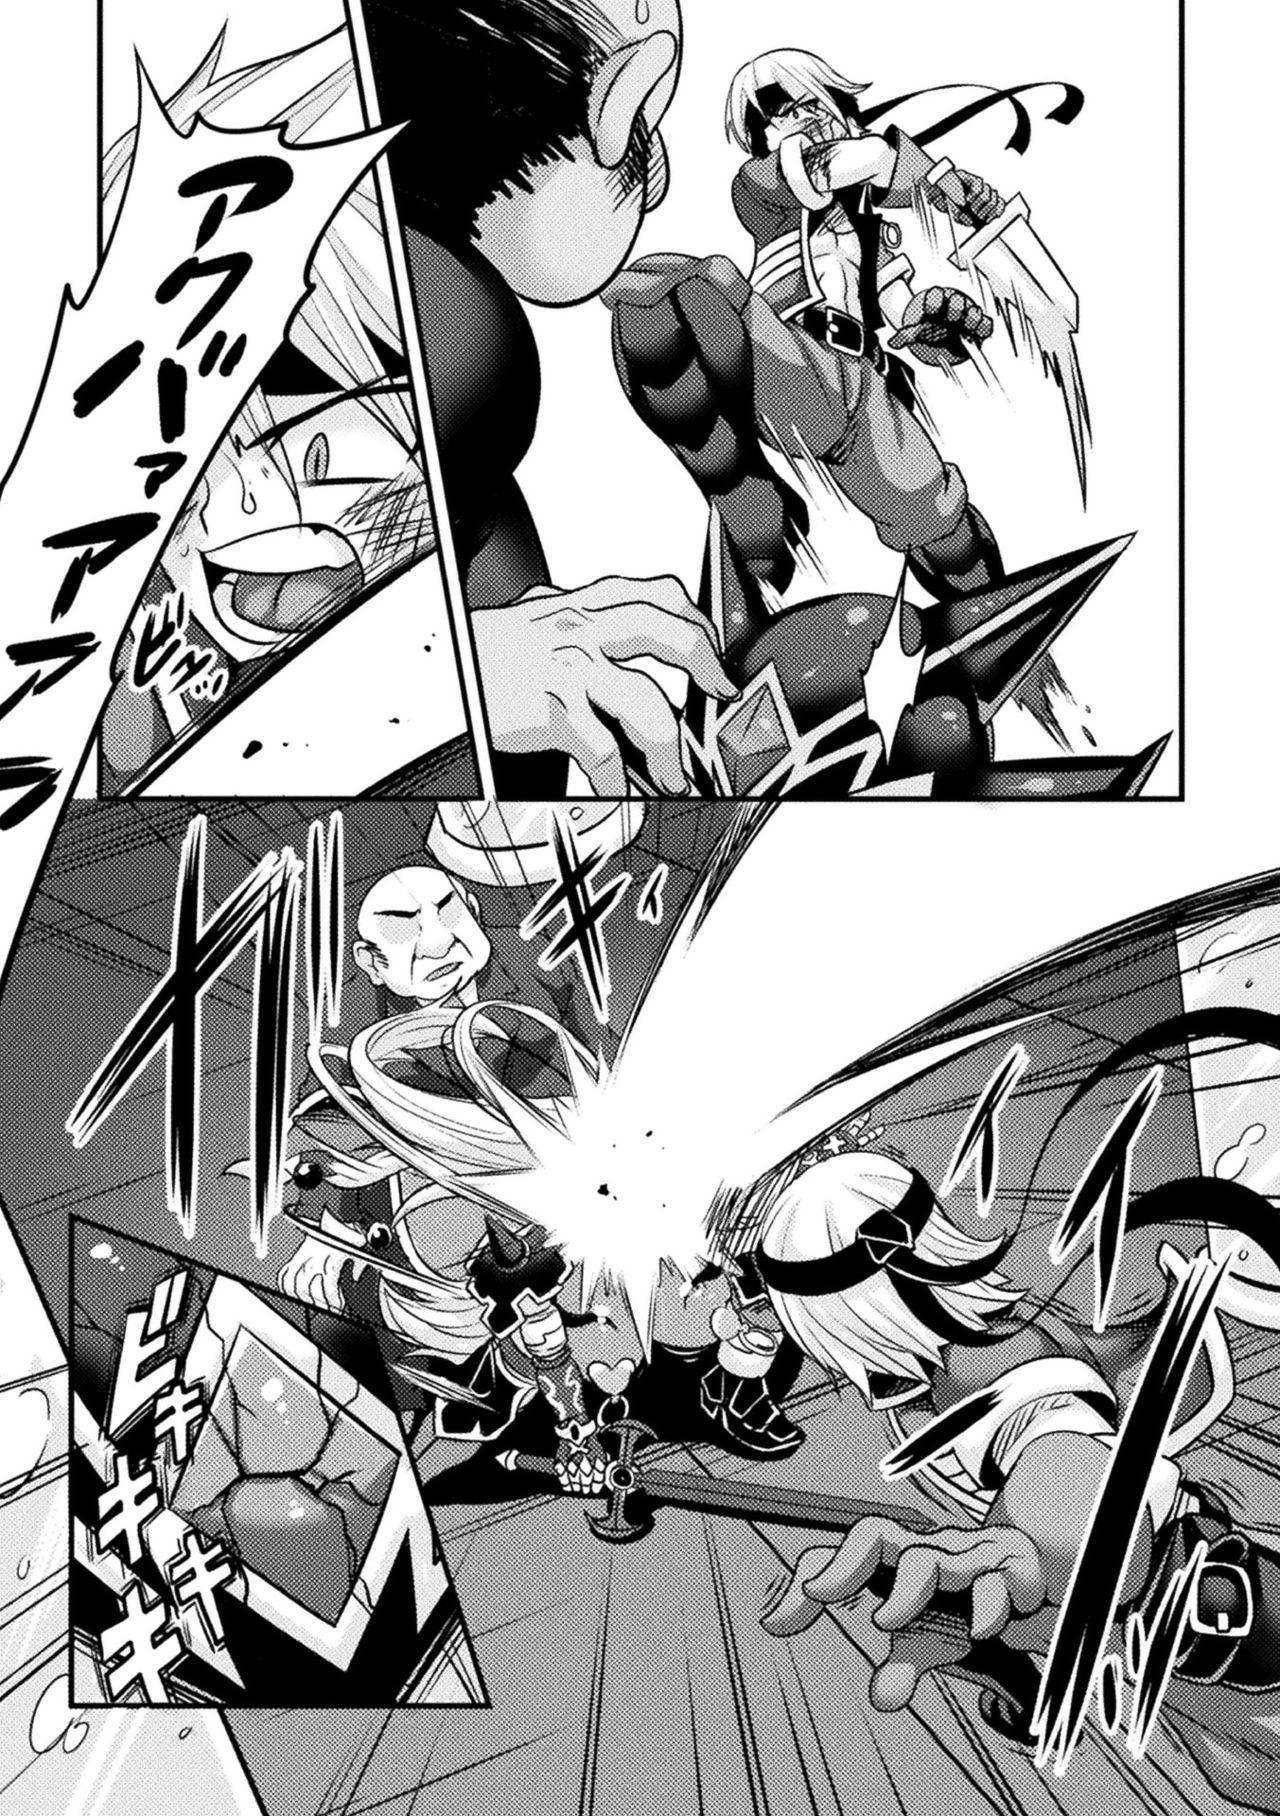 Mama Kukkoro Heroines Vol. 4 Bang Bros - Page 11